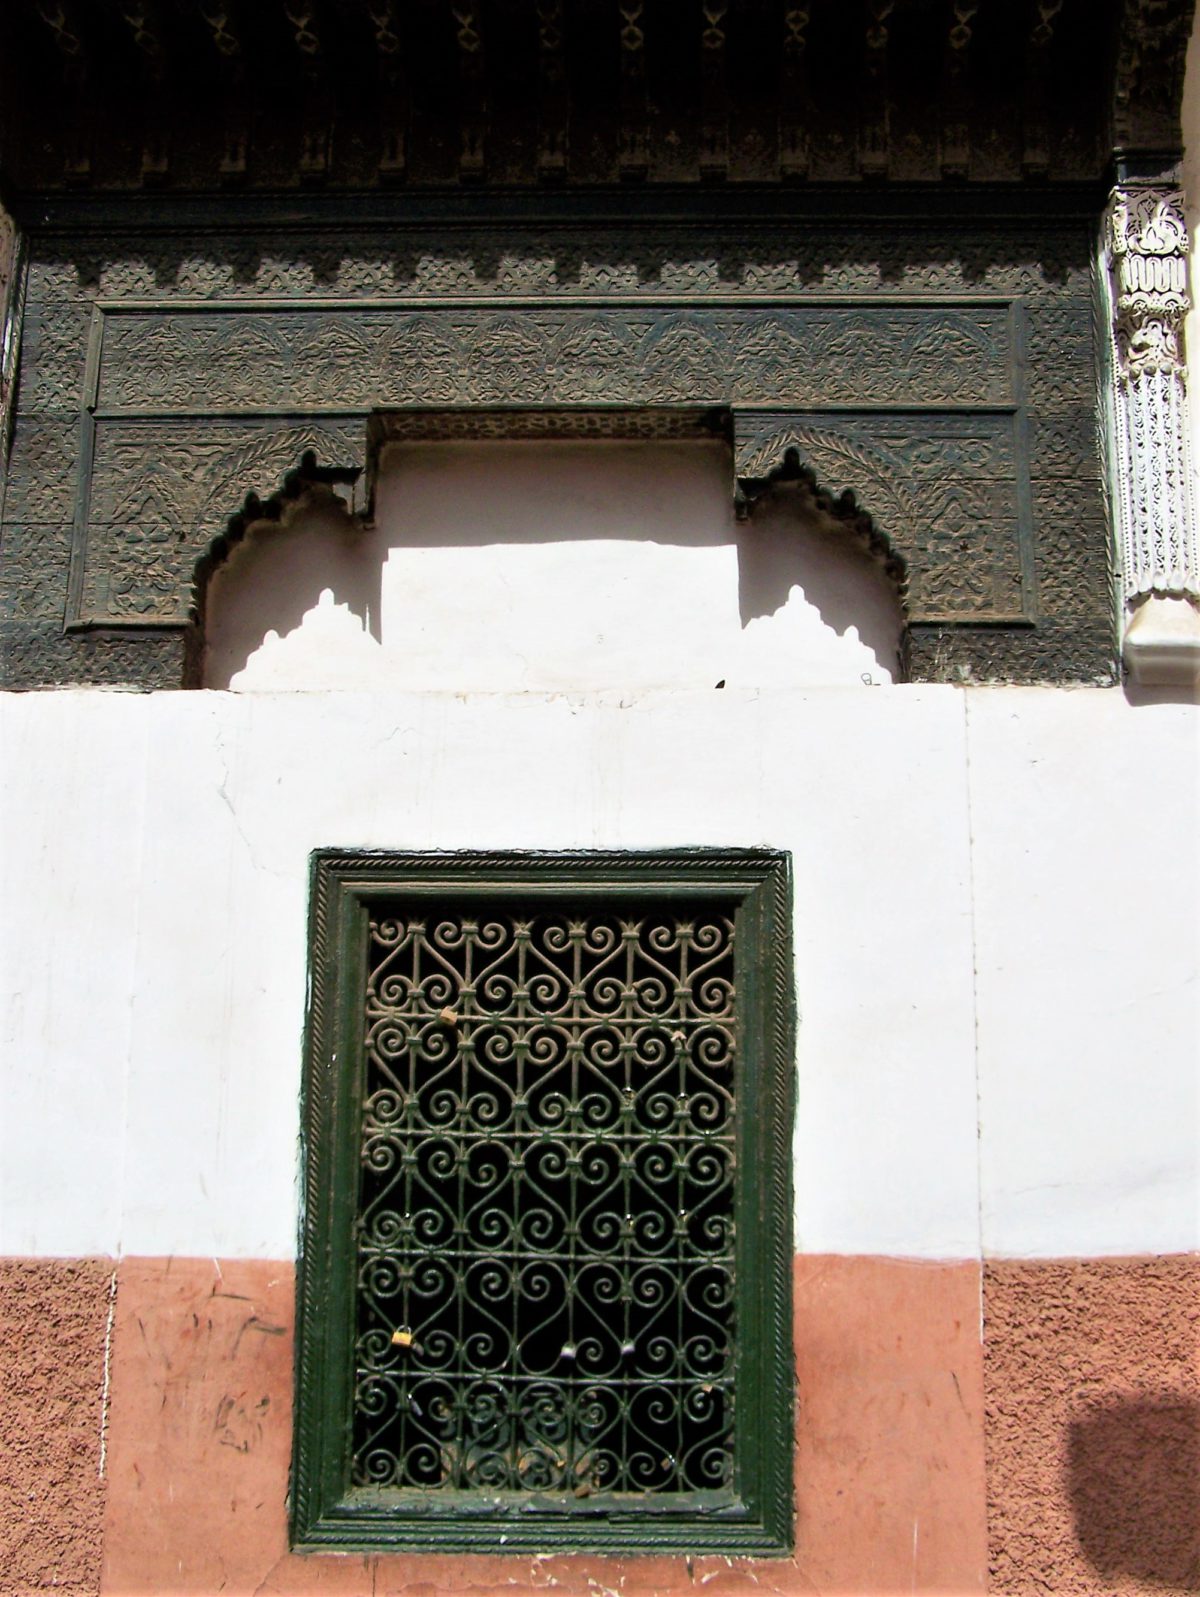 Marokańskie okna przysłaniają dyskretnie to co dzieje się wewnątrz budynku